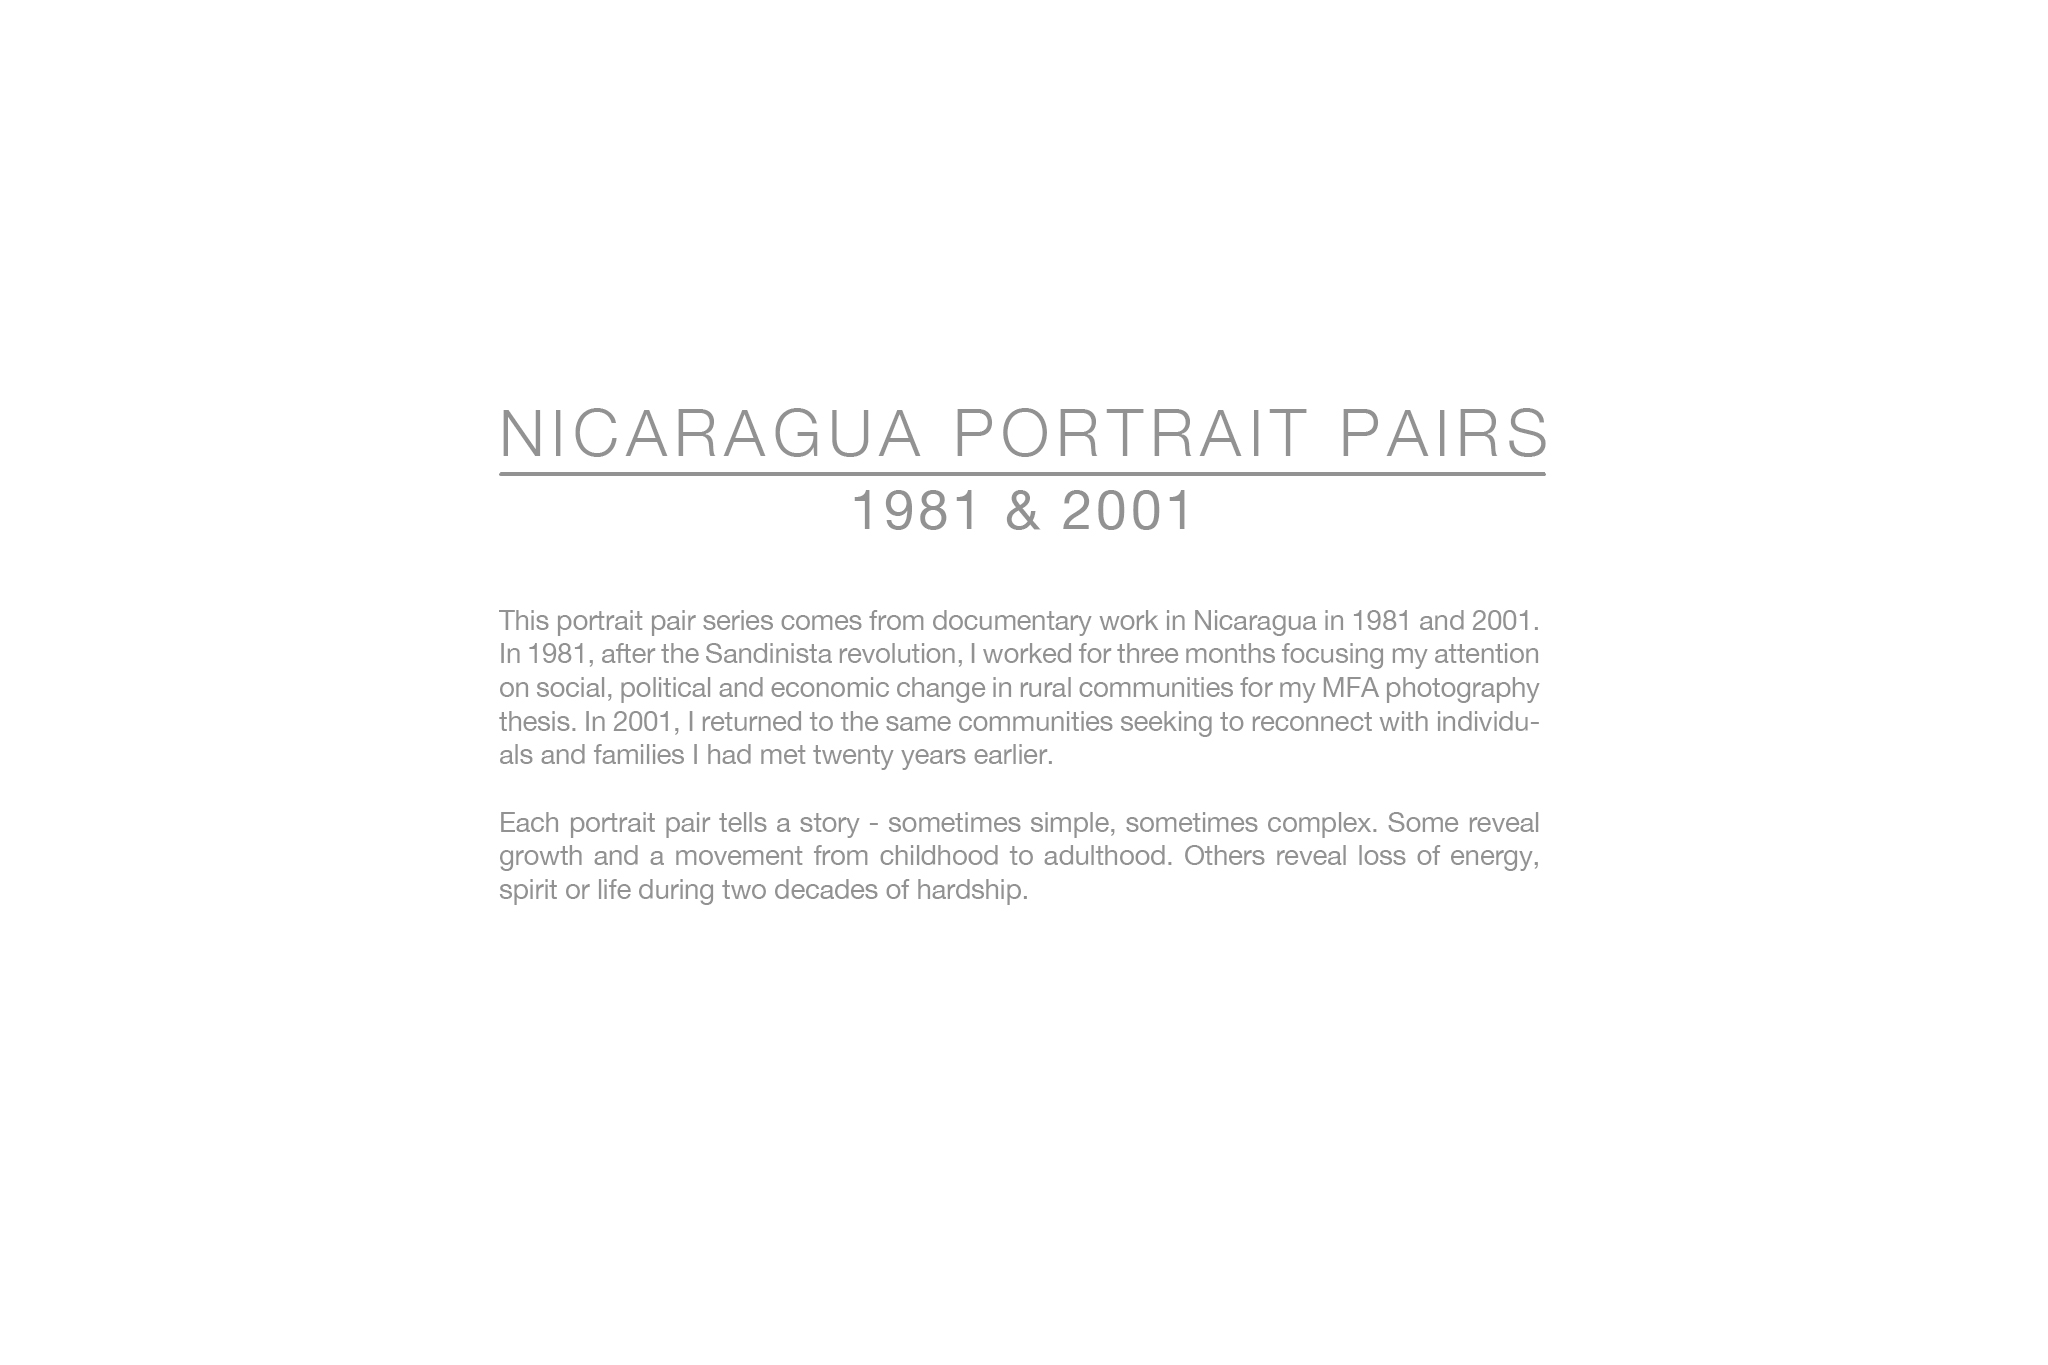 NicaraguaPortraitPairs2017.04.05